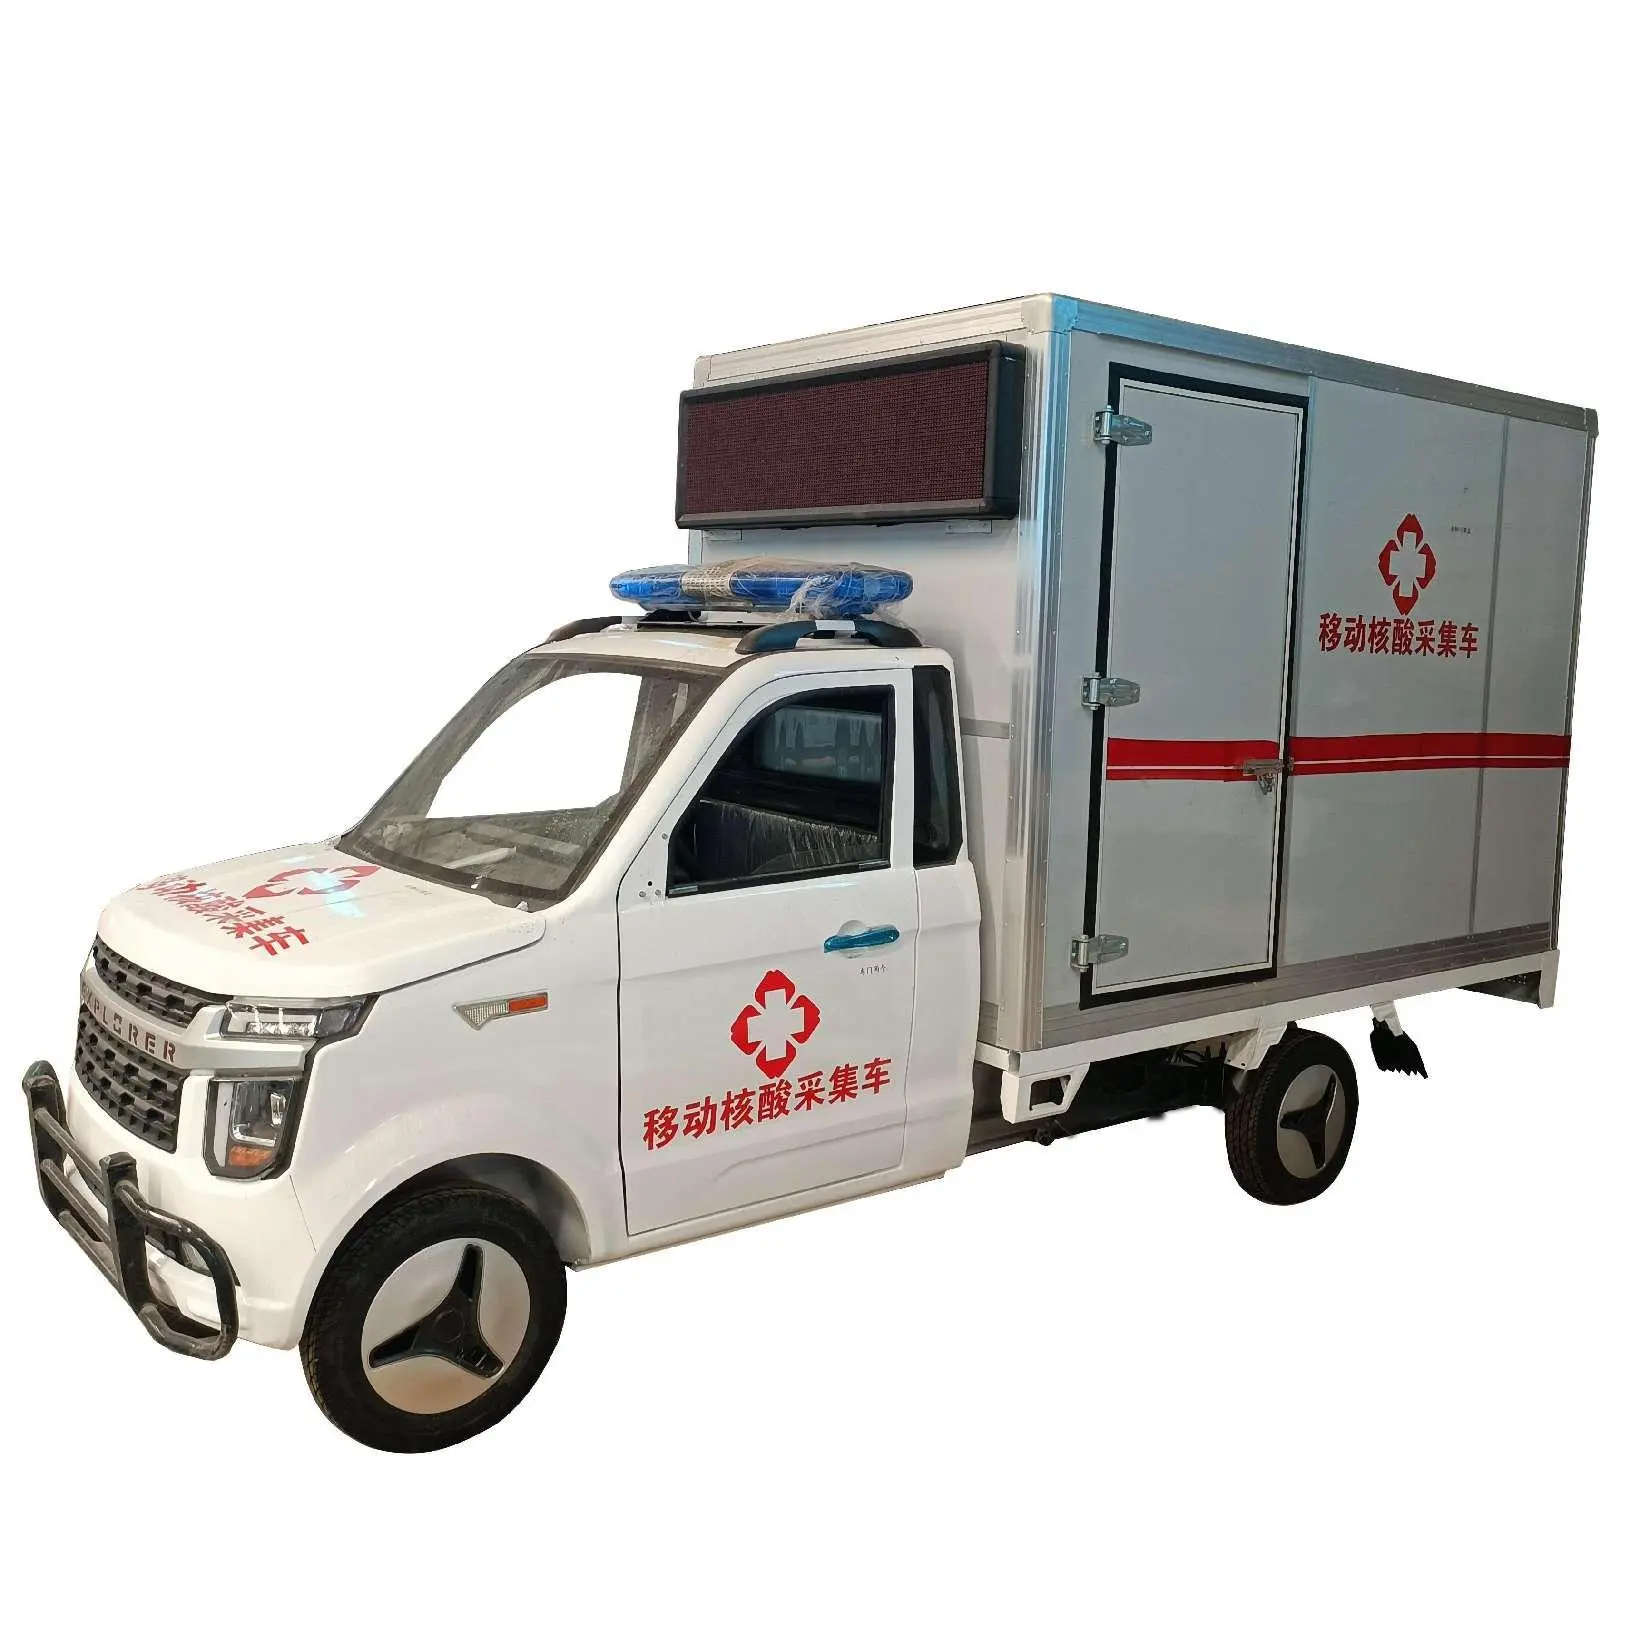 Camioncino elettrico cargo box elettrico per adulti